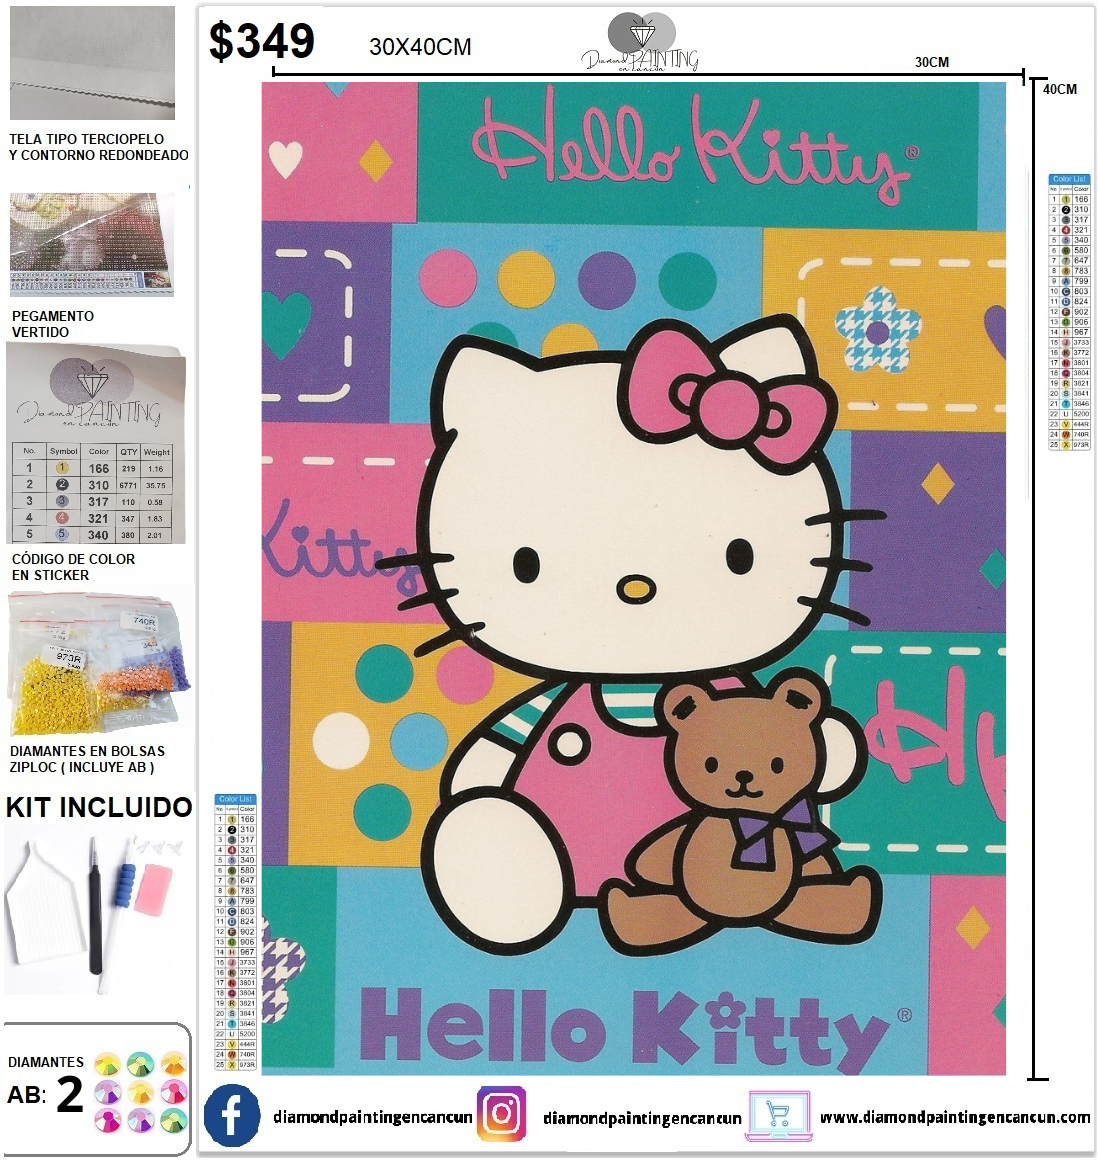 Hello Kitty 30 x 40 incluye DIAMANTES AB